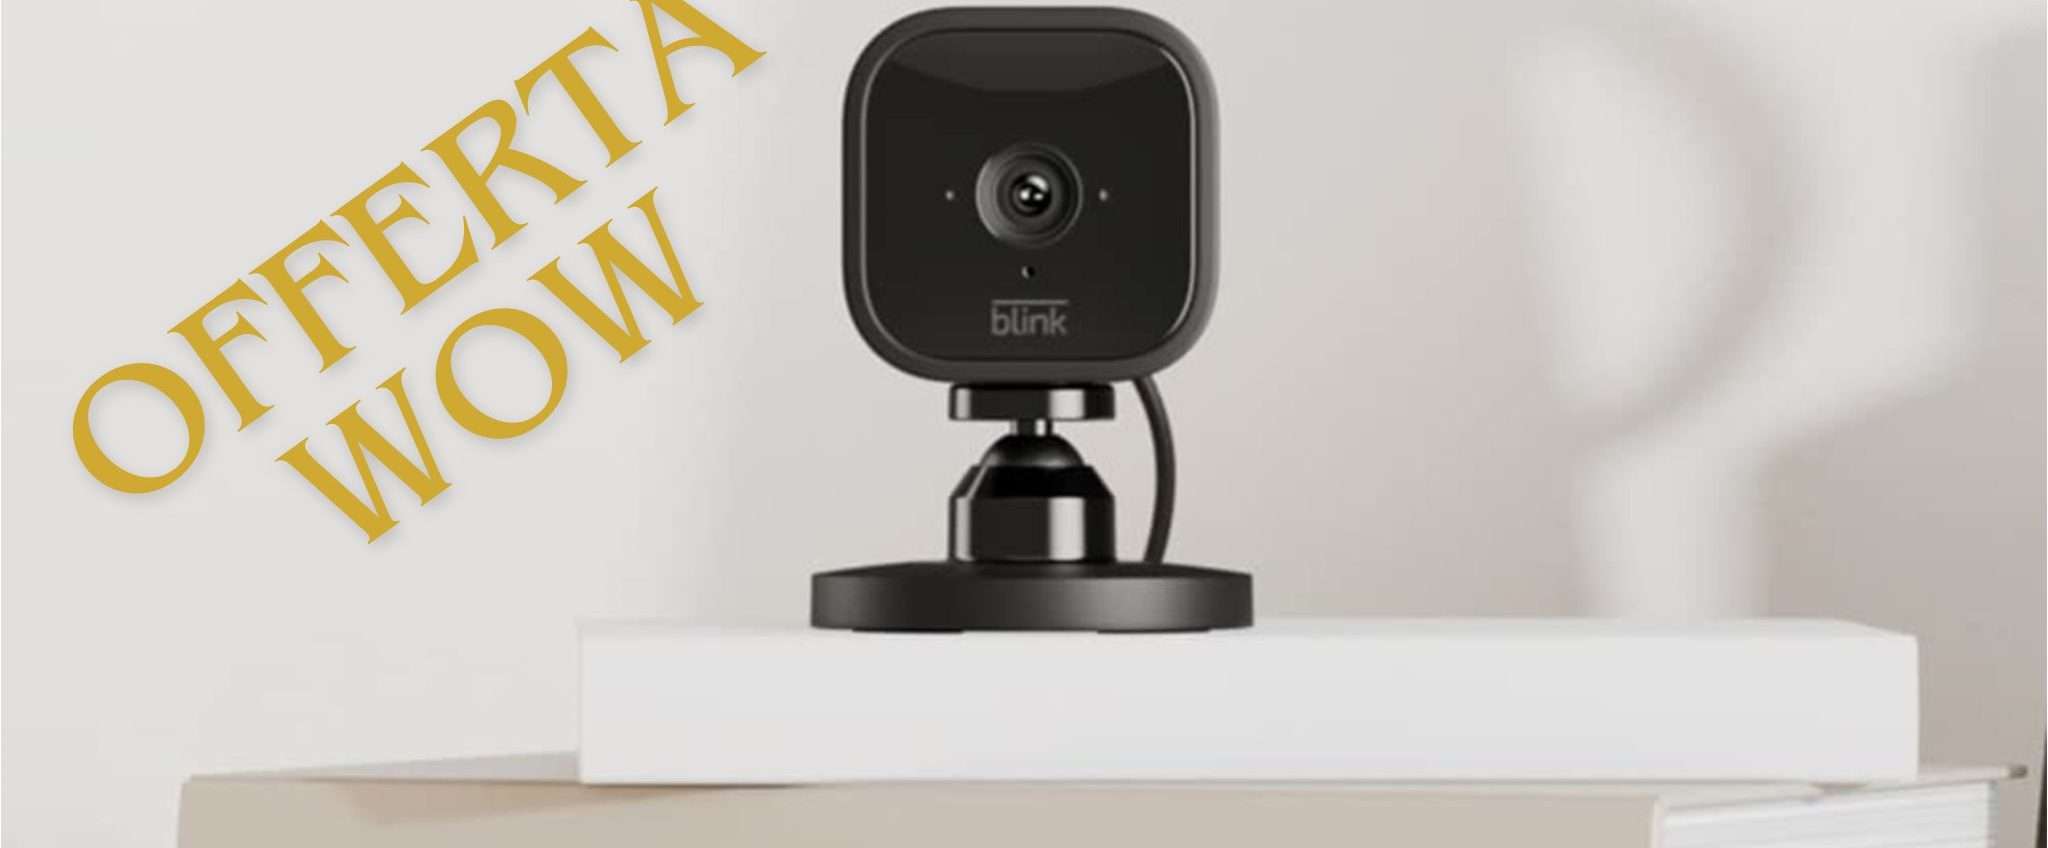 Blink Mini: la videocamera di sicurezza ideale a un prezzo WOW